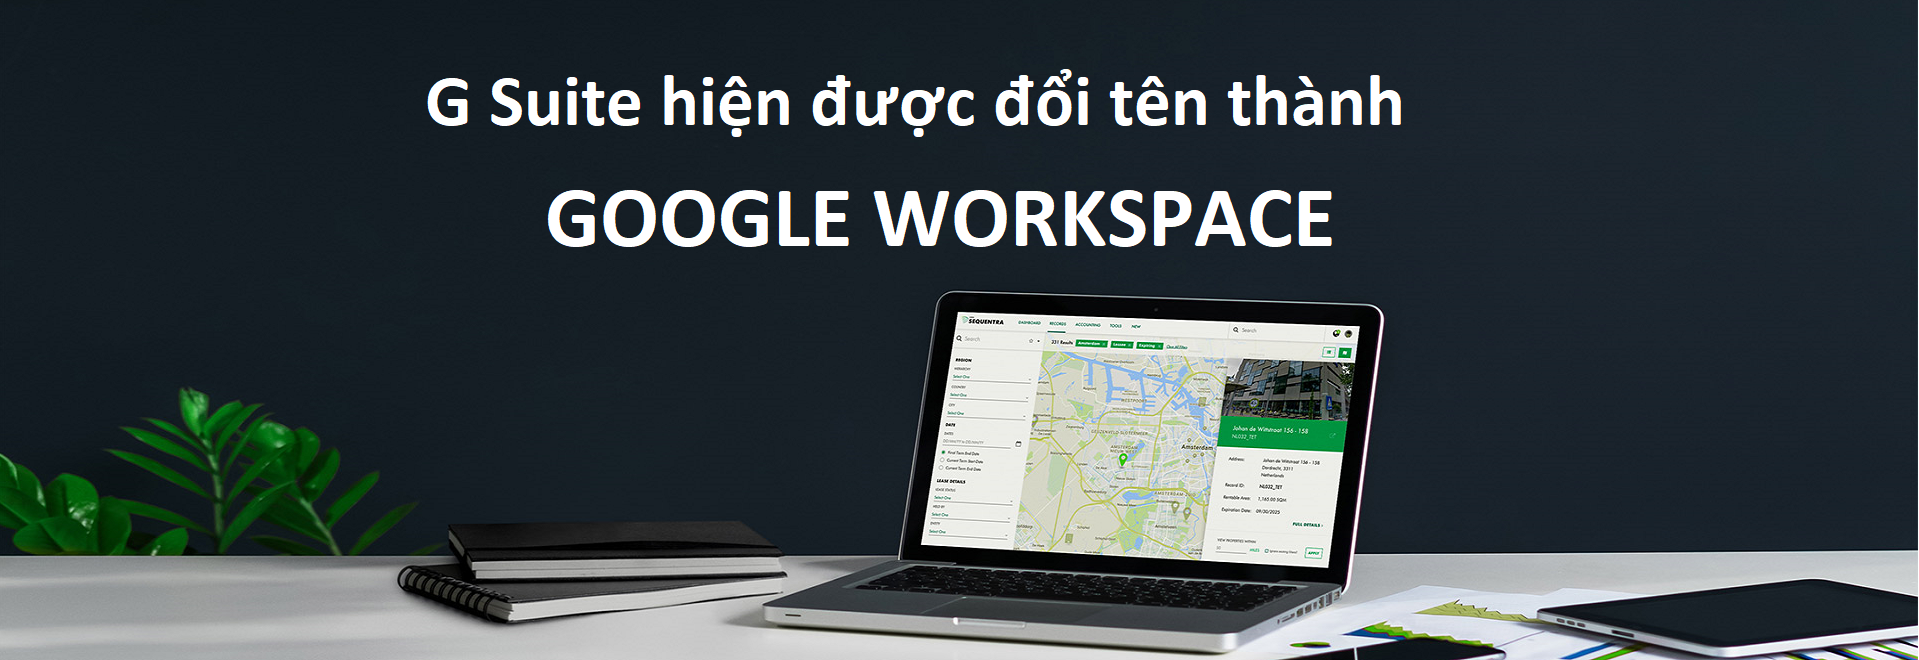 G Suite hiện được đổi tên thành Google Workspace